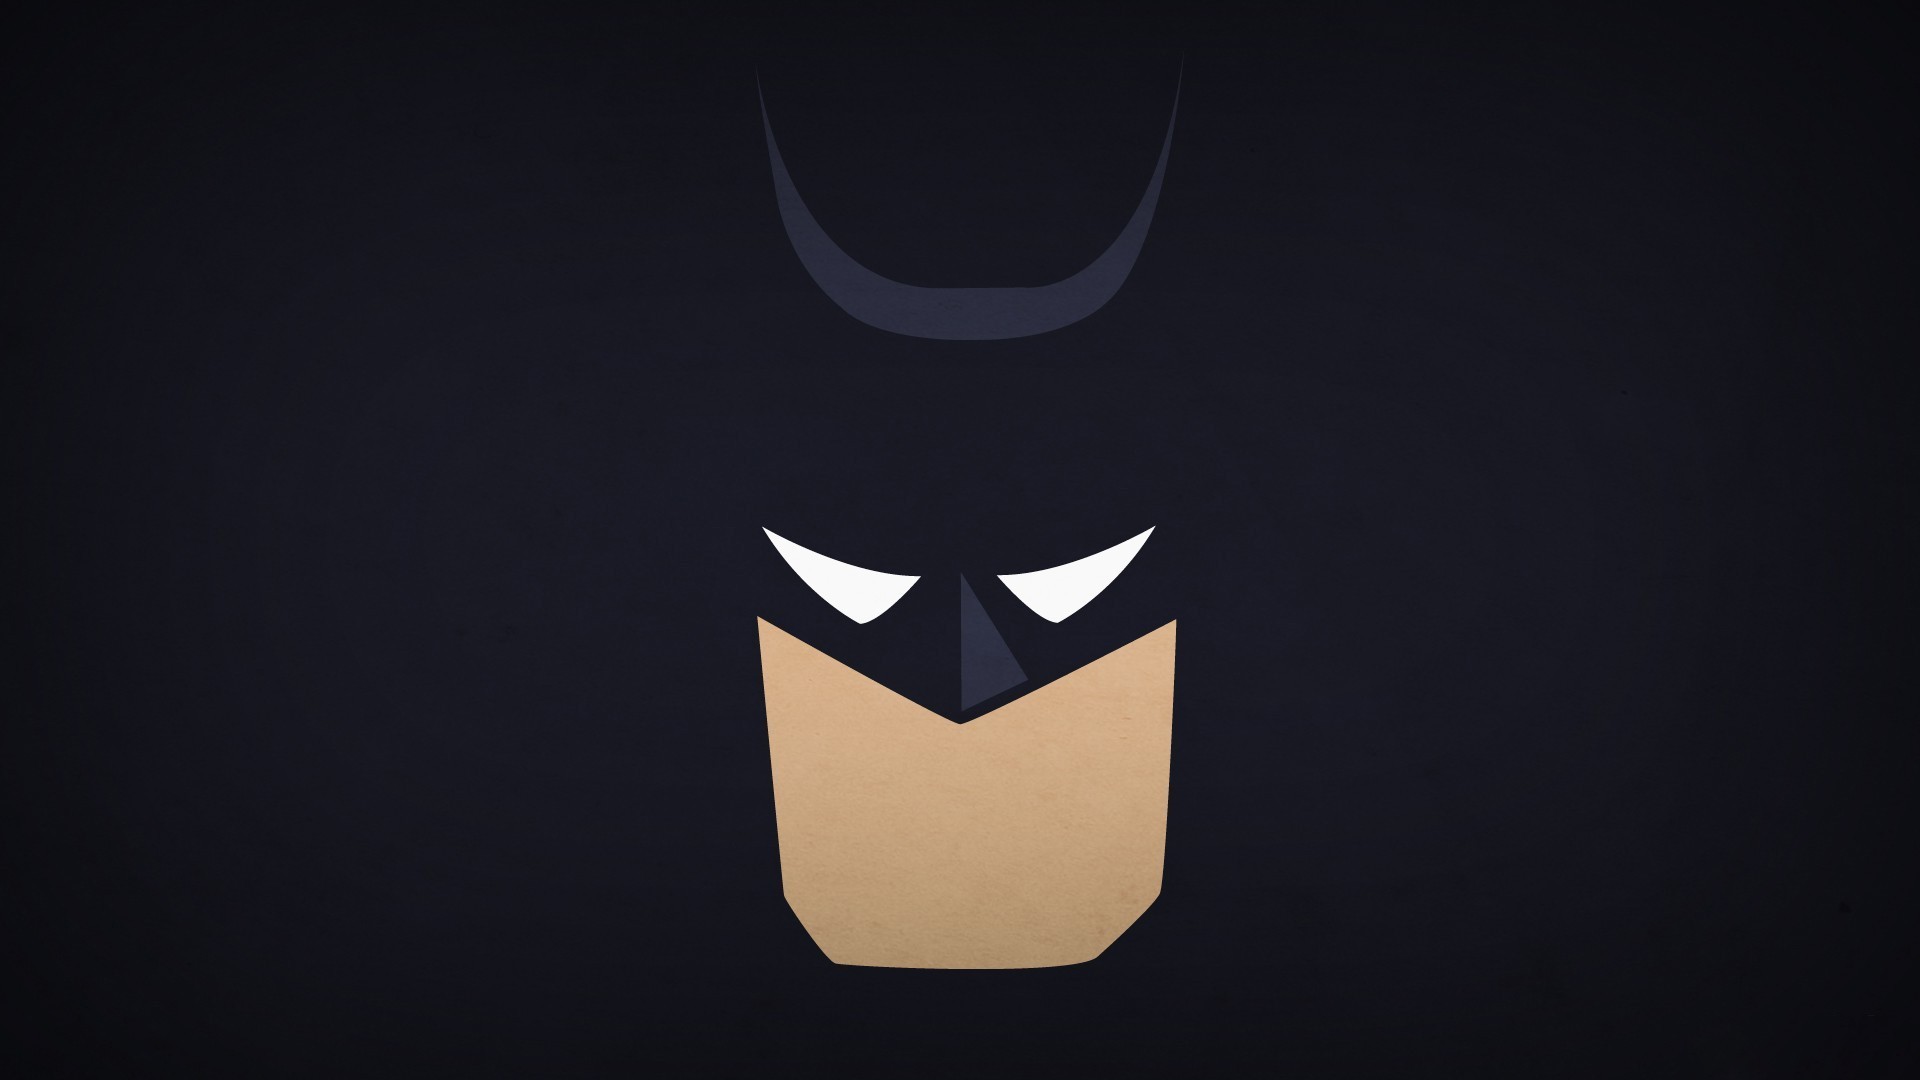 Minimalism batman superhero wallpapers hd desktop and mobile